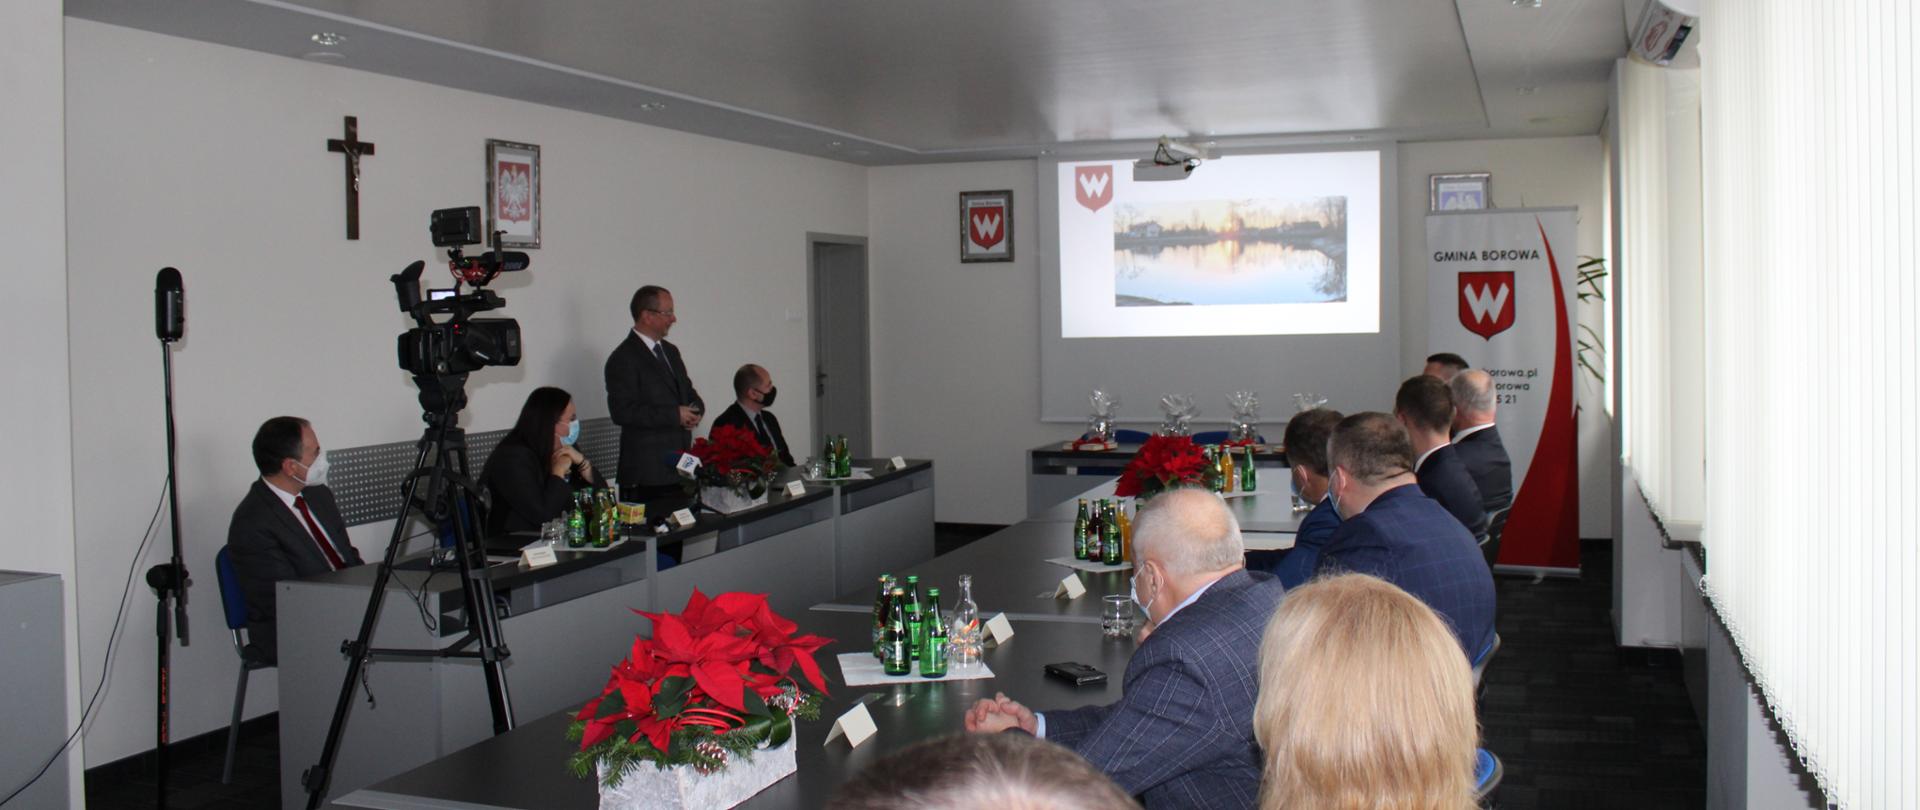 Uczestnicy konferencji prezentującej inwestycje w gminie Borowa, na ekranie zdjęcie zbiornika retencyjnego Sicina.